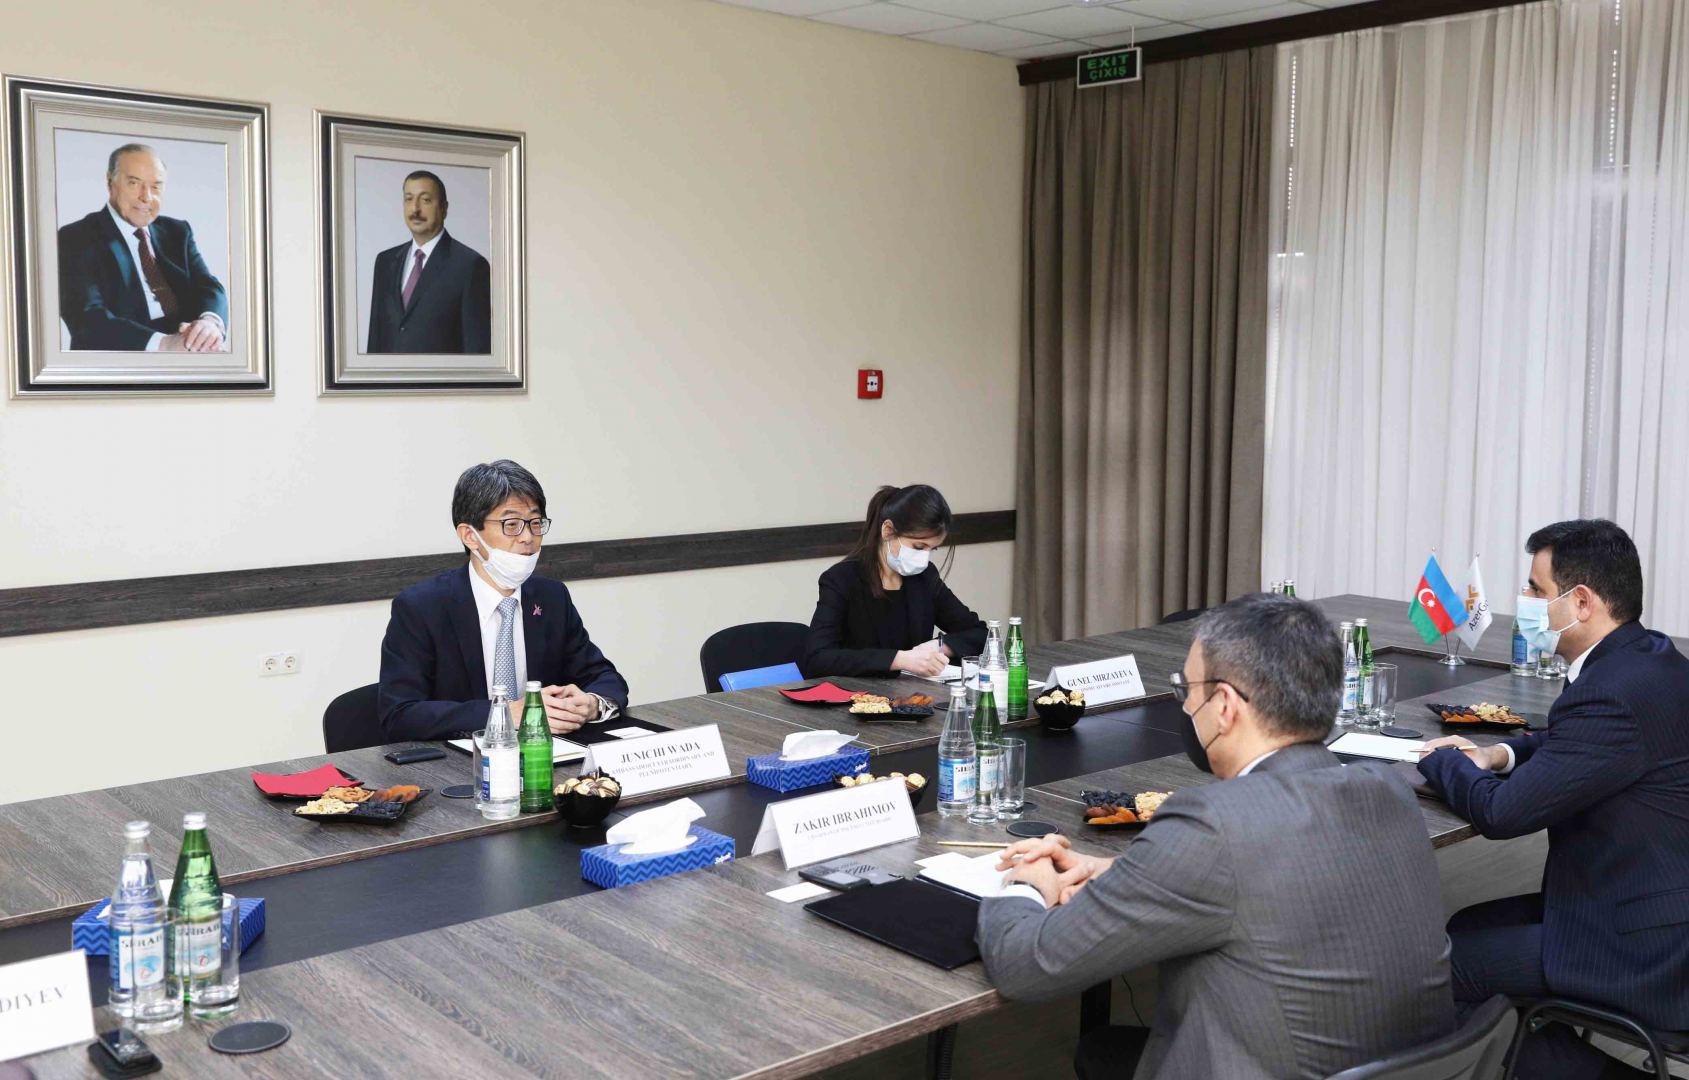 Состоялась встреча между ЗАО “AzerGold” и послом Японии в Азербайджане (ФОТО)